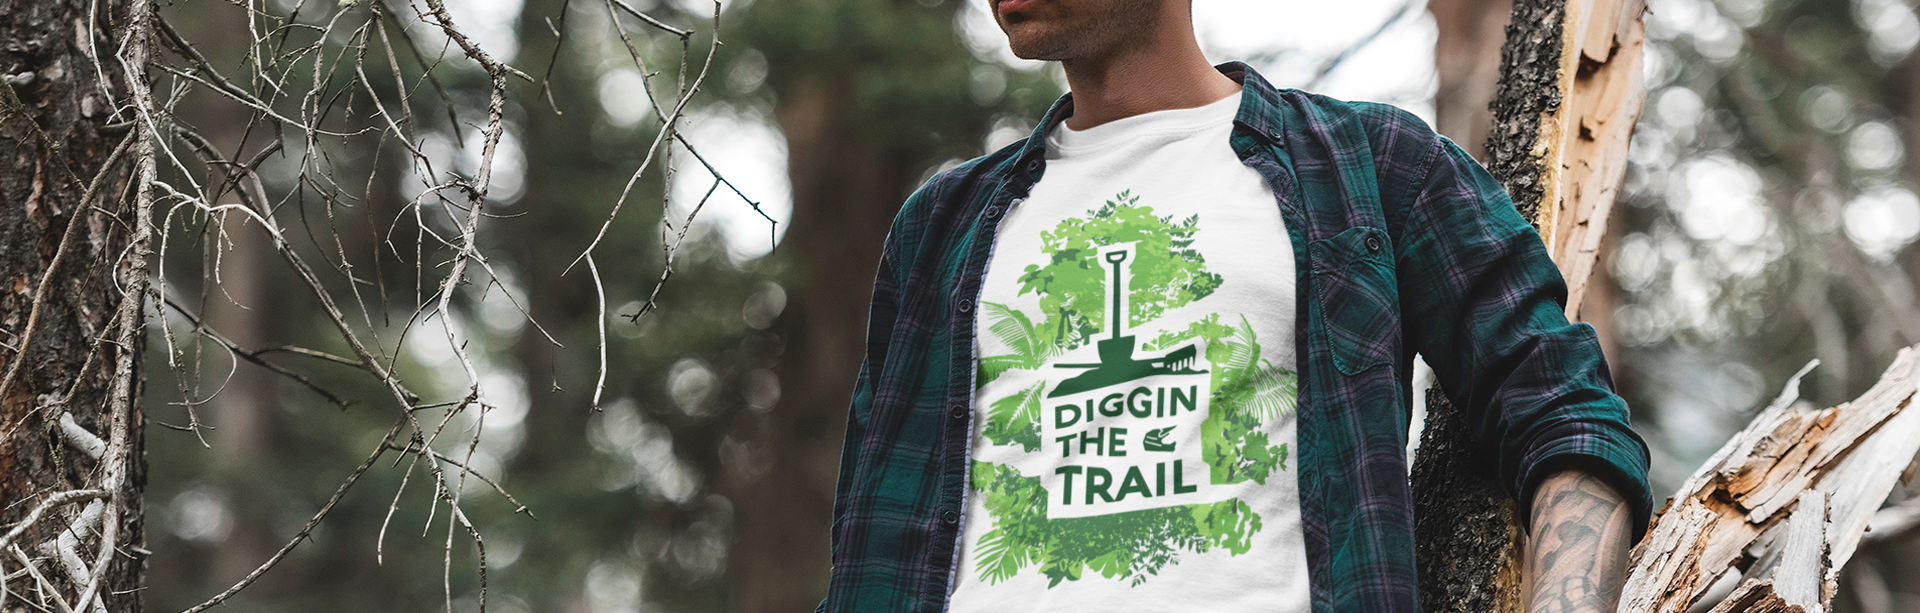 Diggin The Trail